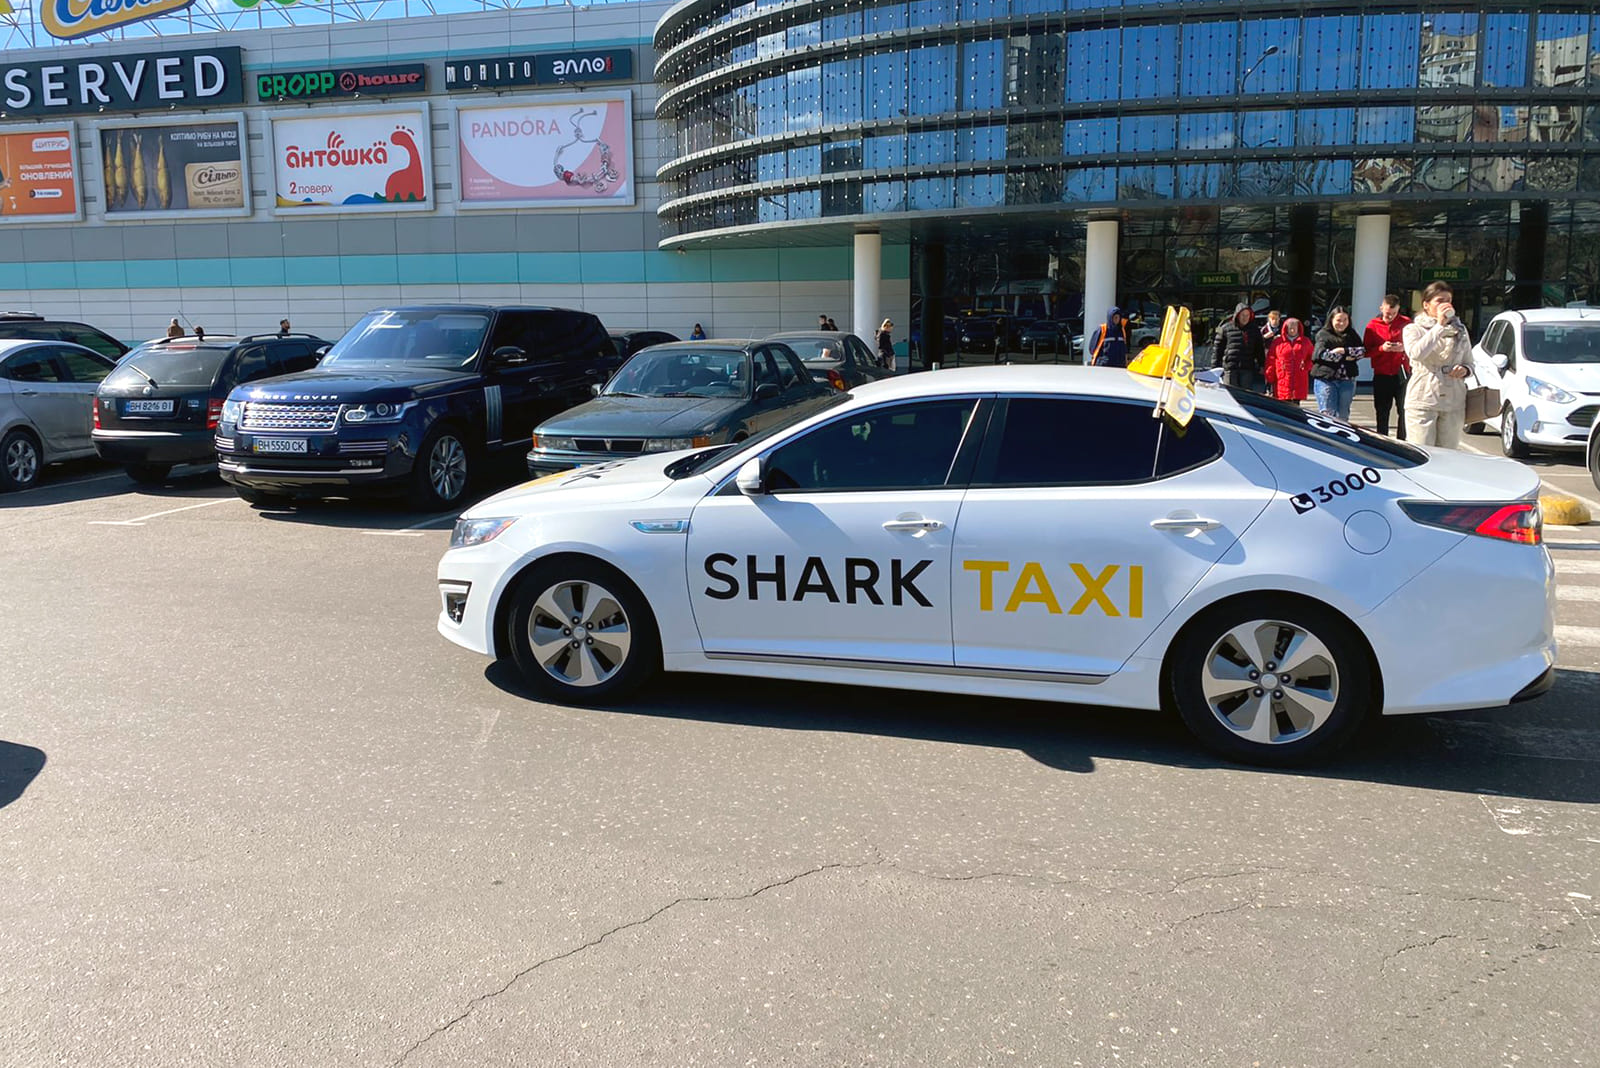 Shark taxi